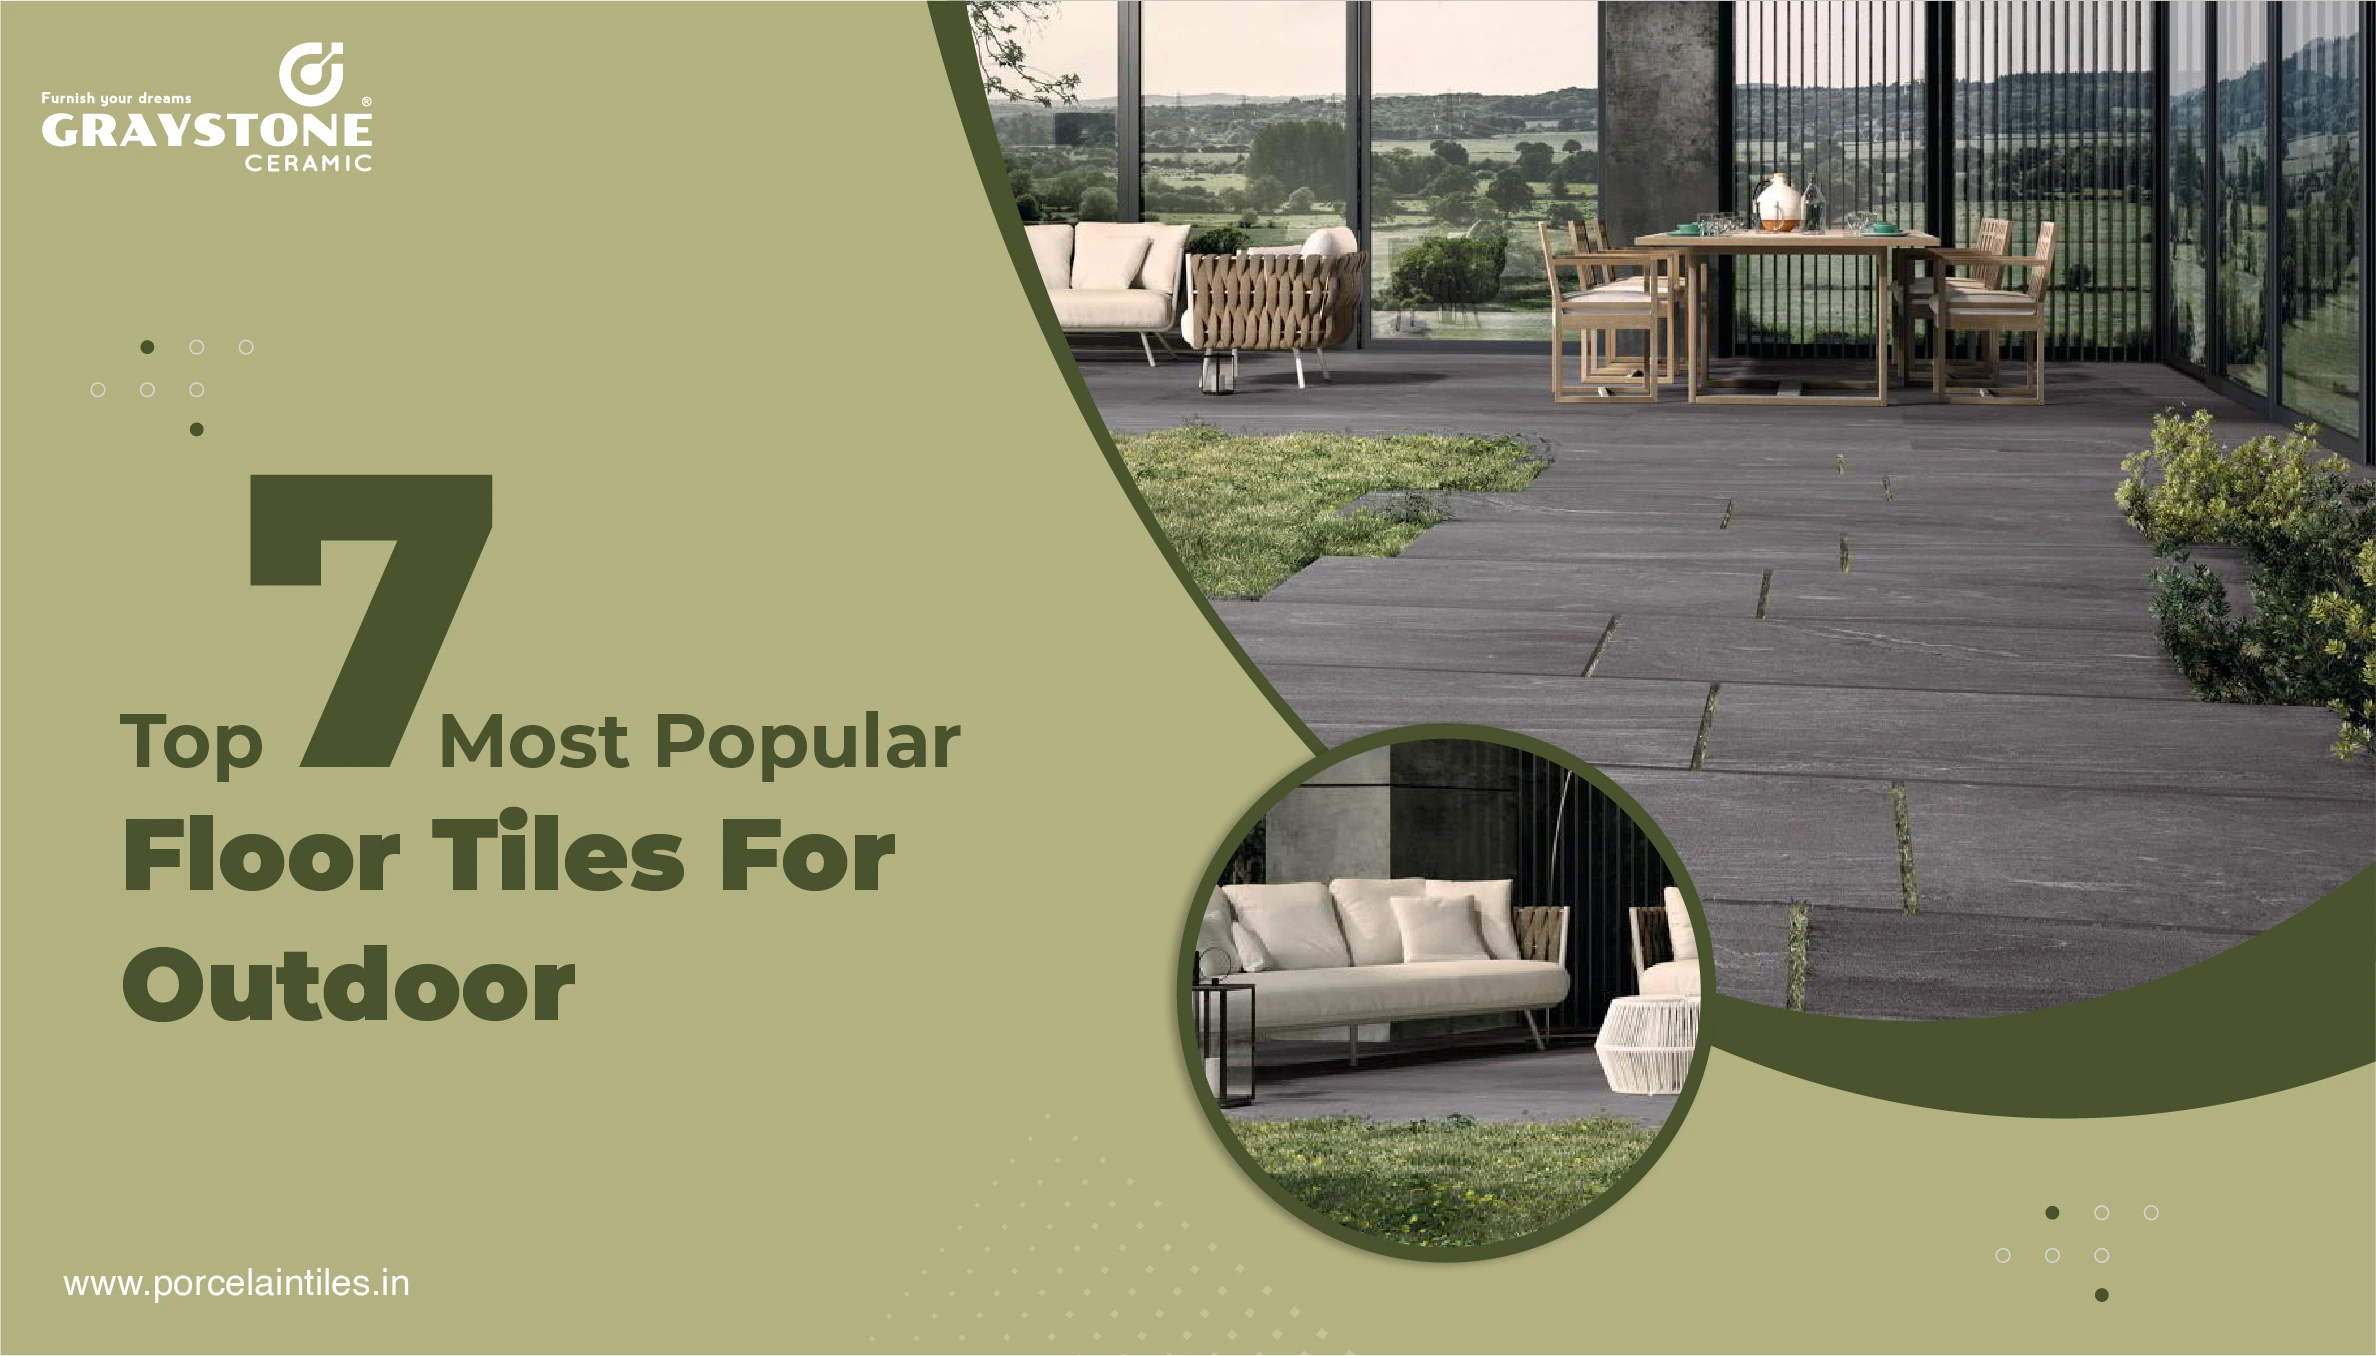 Top 7 Most Popular Floor Tiles For Outdoor